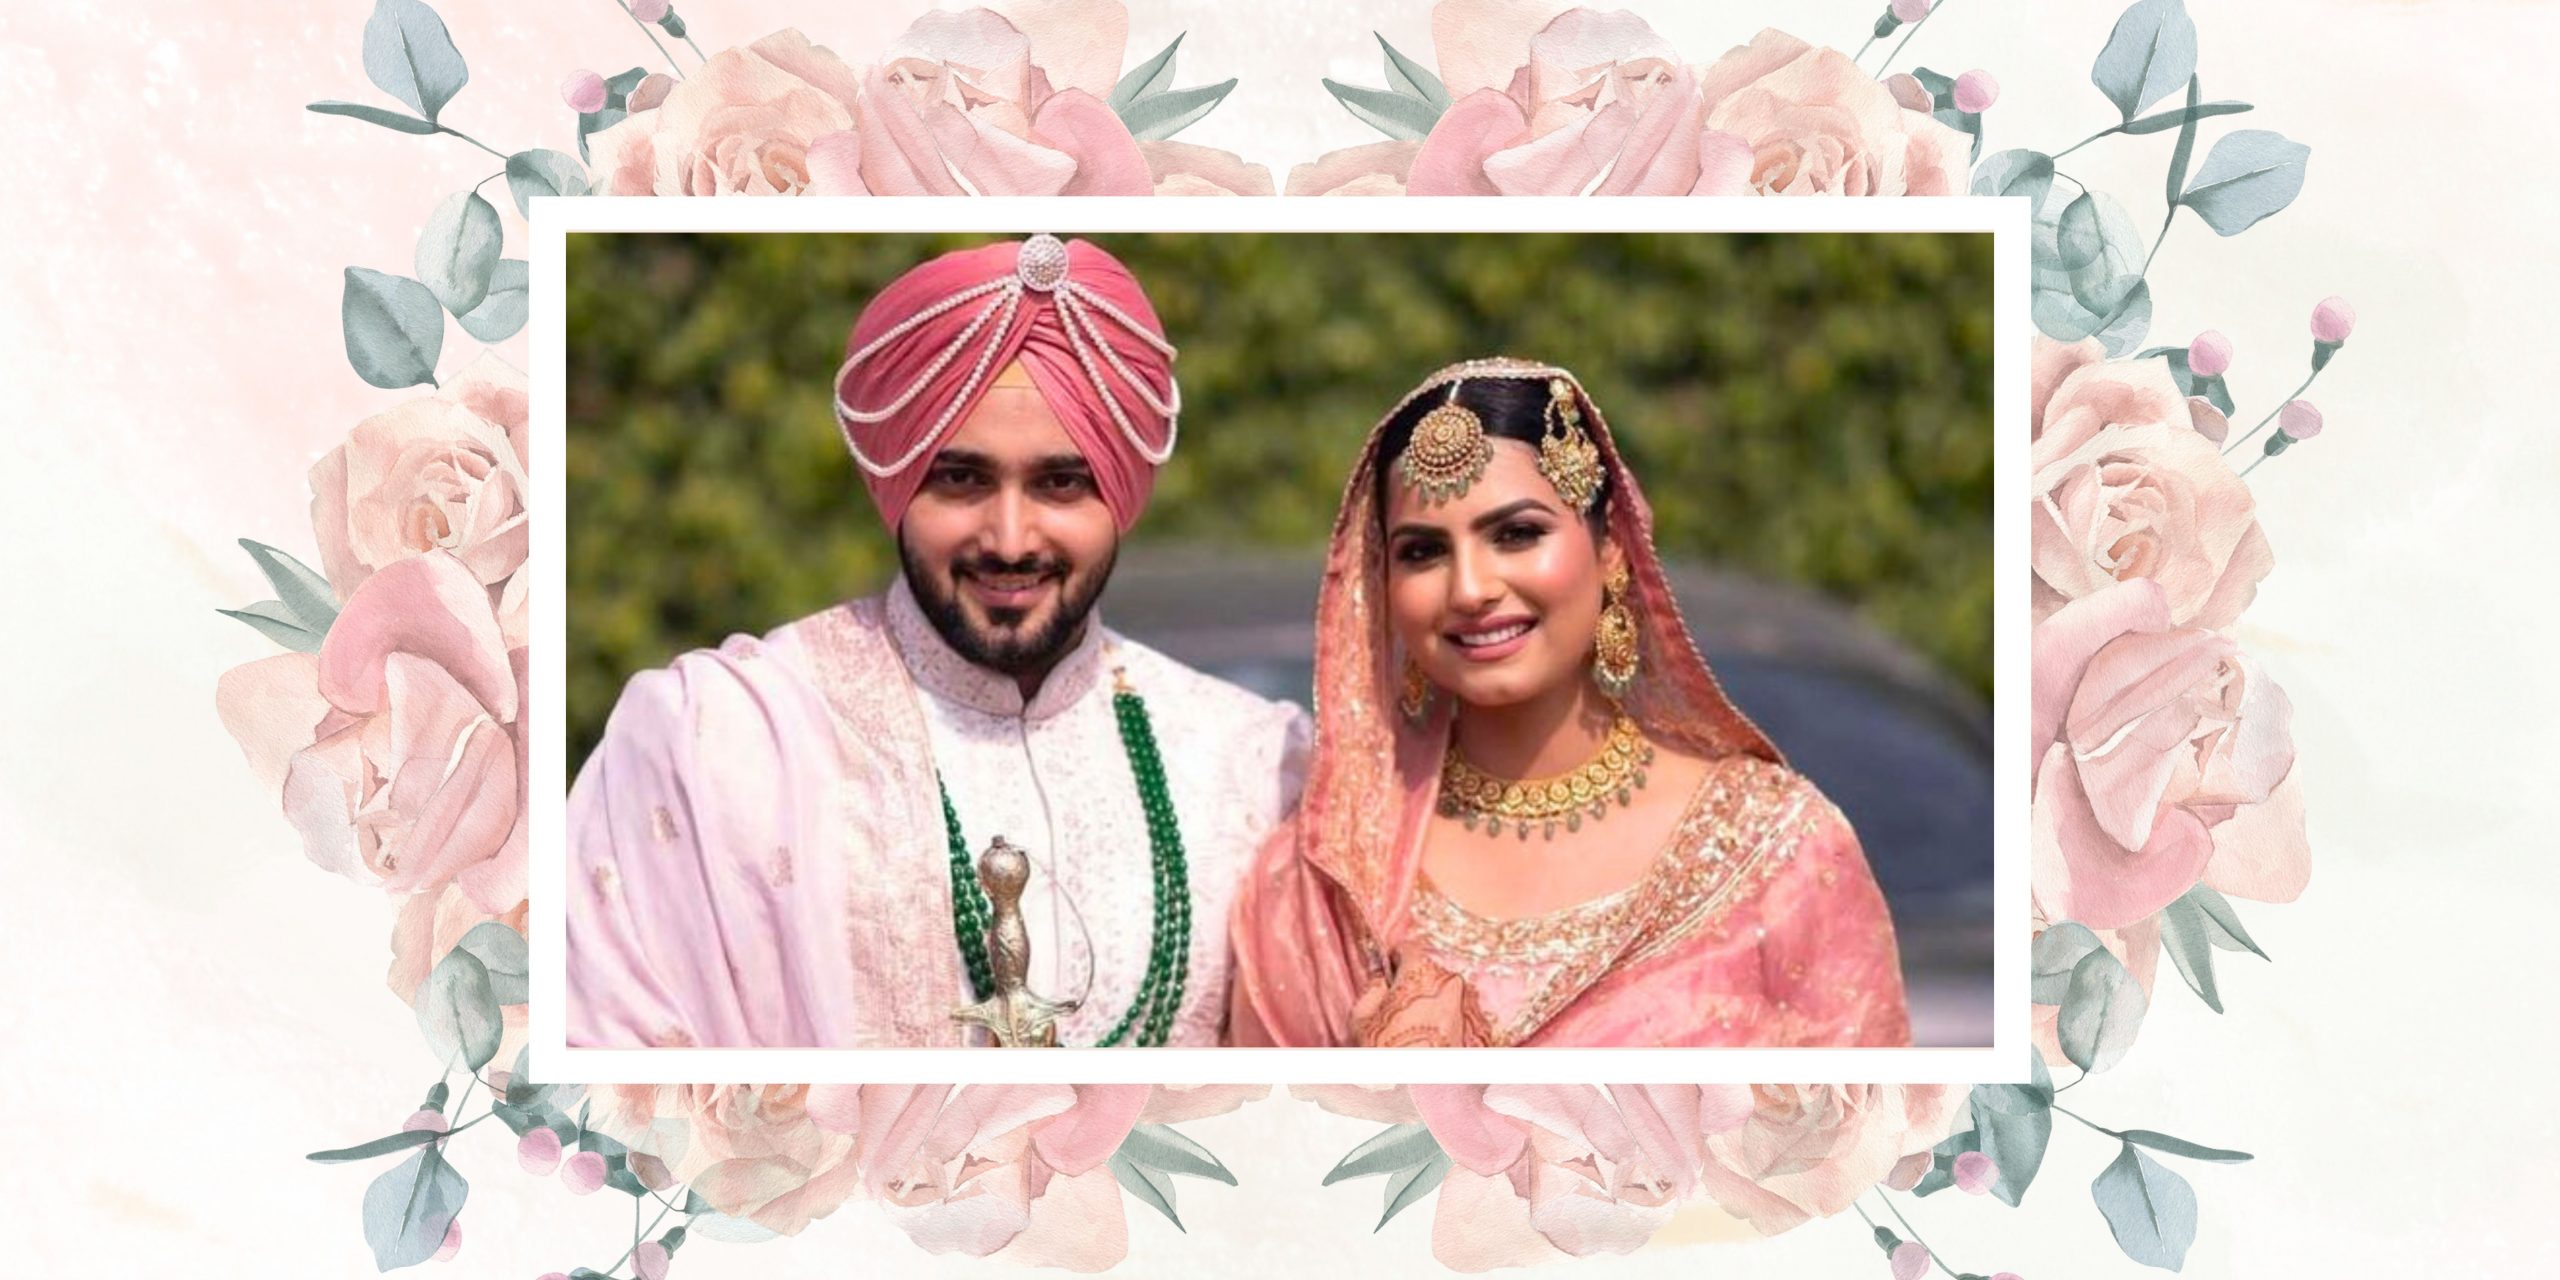 Celebrating Tradition: The Vibrant Punjabi Marriage Community